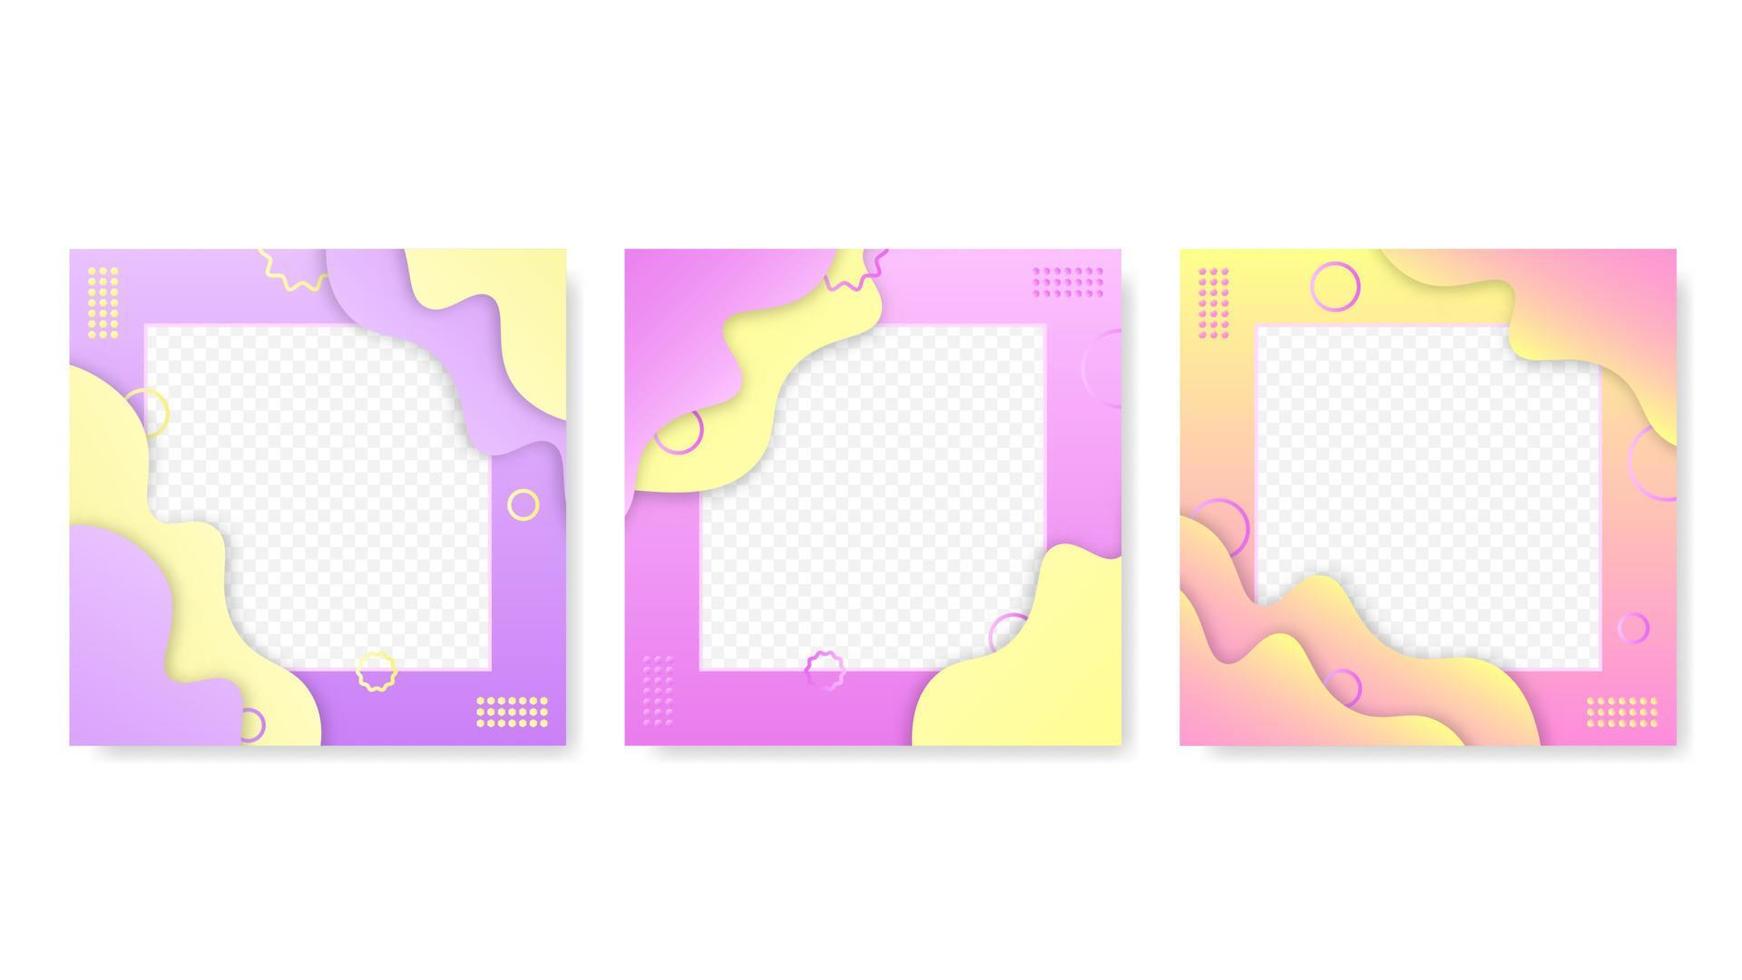 cornici astratte con modello di onde e nuvole. gradiente viola e rosa con ornamenti di social media ornati forme vettoriali ondulate decorative gialle geometriche.